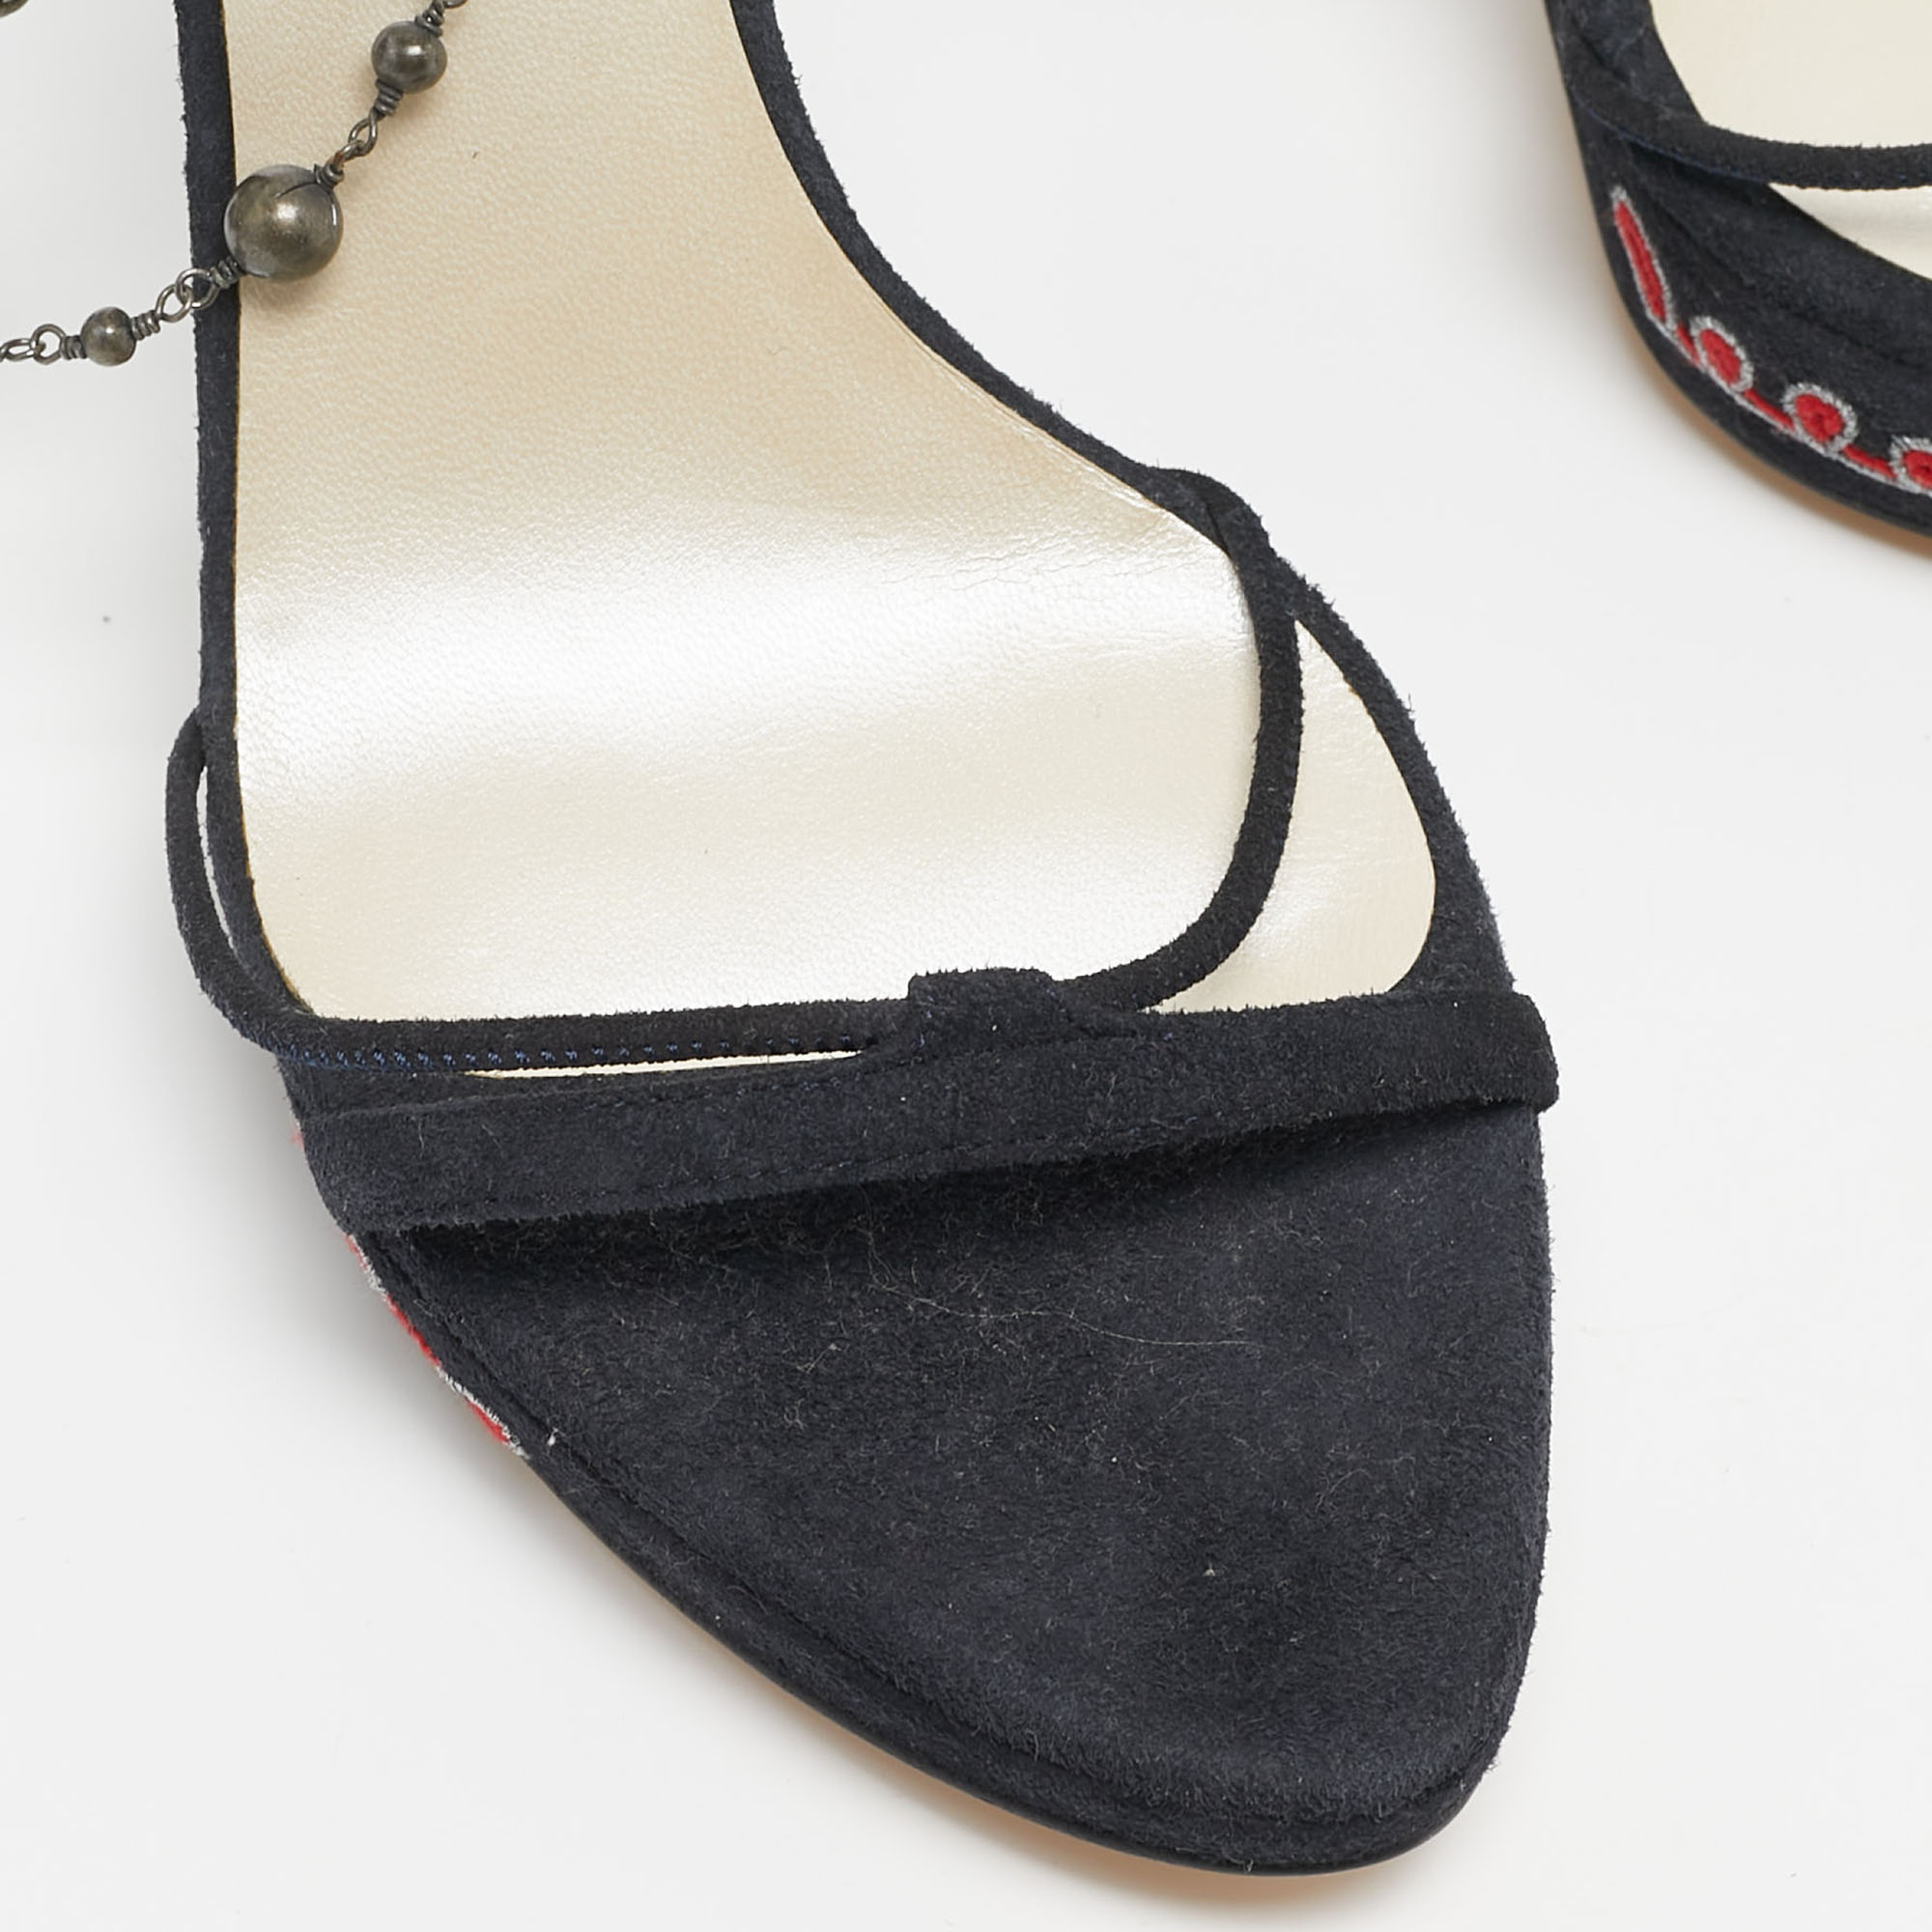 Christian Dior Black Suede Embellished Ankle Strap Sandals Size 36.5